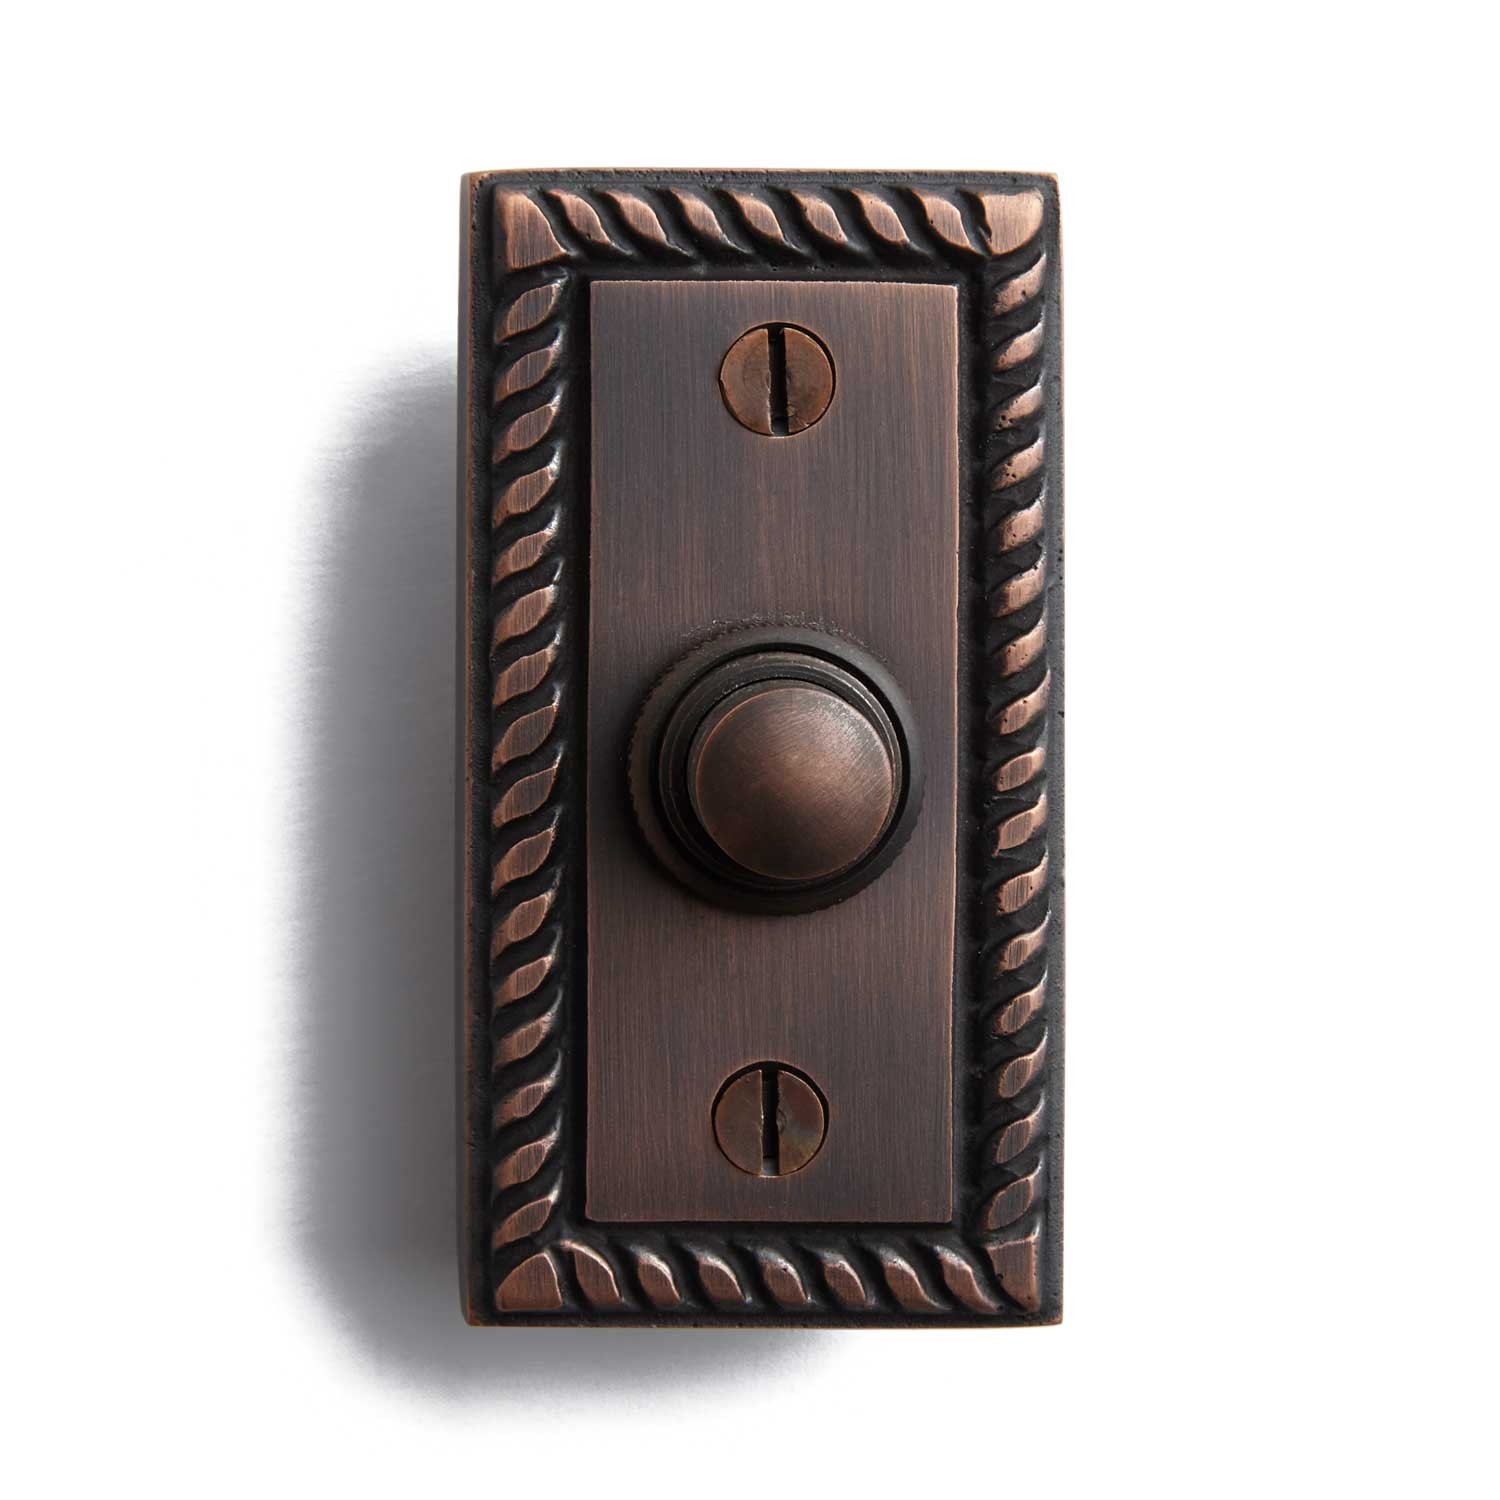 Roped Rectangular Doorbell - Hardware